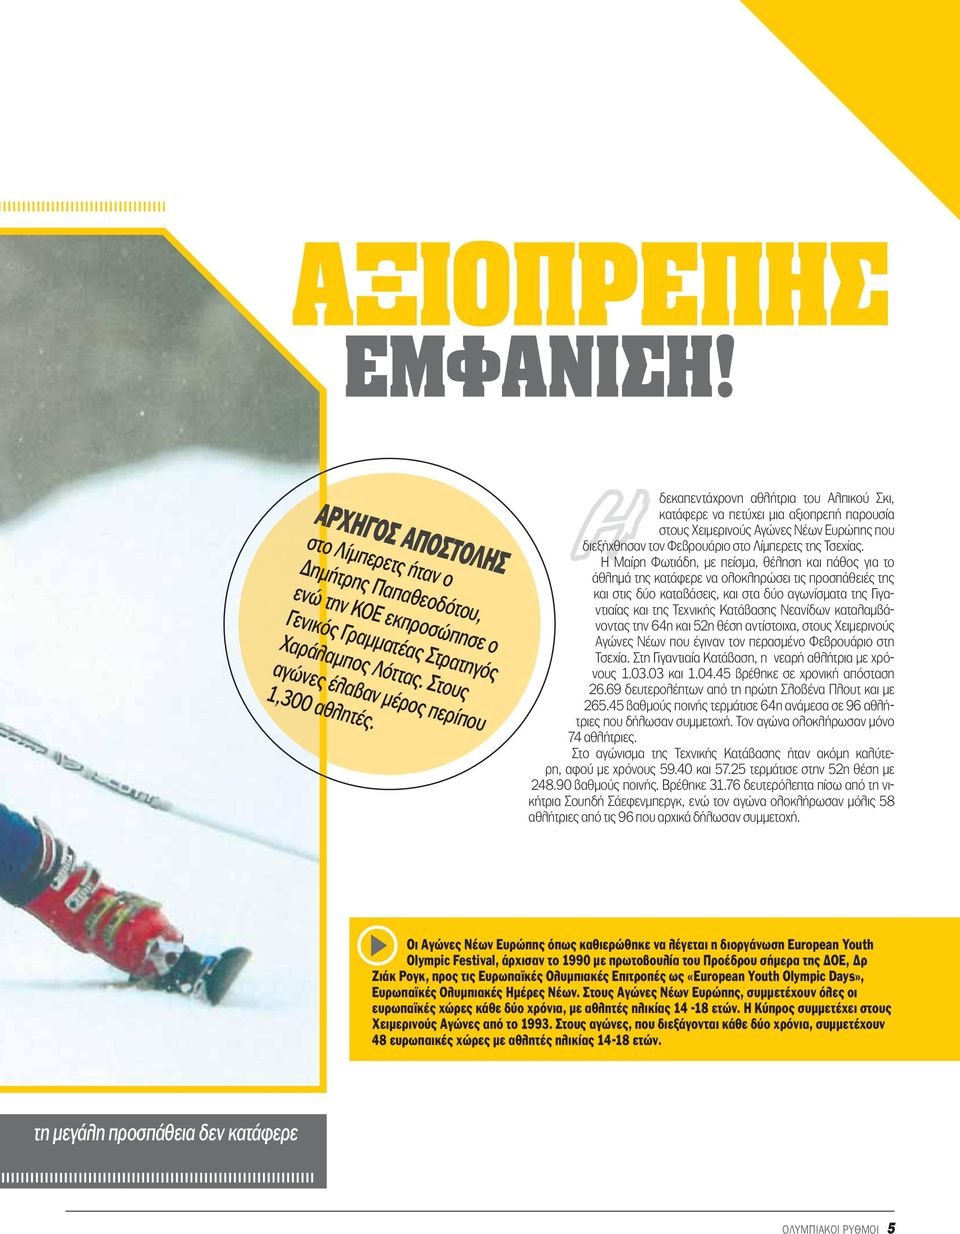 Η δεκαπεντάχρονη αθλήτρια του Αλπικού Σκι, κατάφερε να πετύχει μια αξιοπρεπή παρουσία στους Χειμερινούς Αγώνες Νέων Ευρώπης που διεξήχθησαν τον Φεβρουάριο στο Λίμπερετς της Τσεχίας.